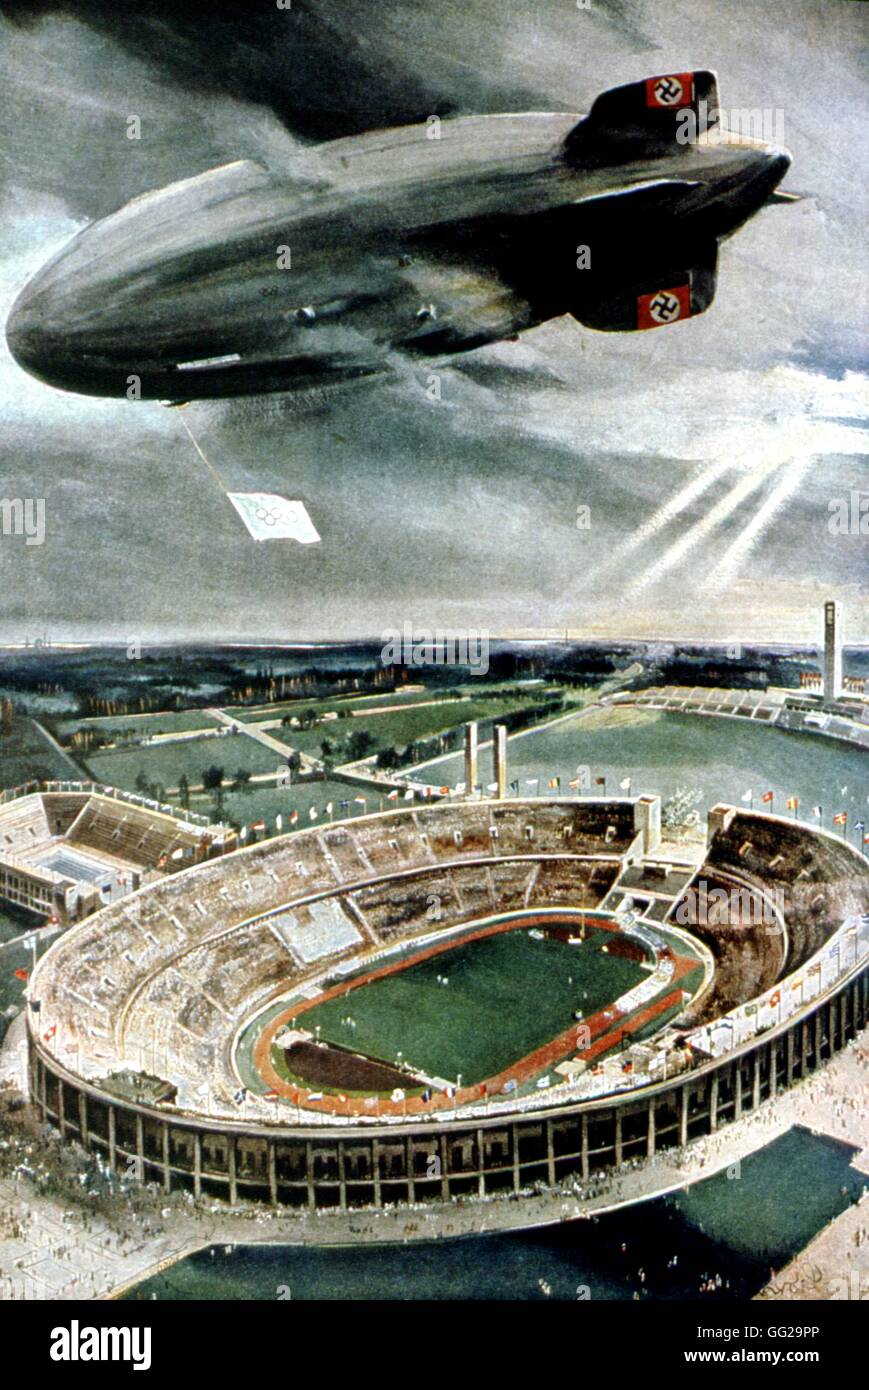 Poster : la cérémonie d'ouverture des Jeux Olympiques de 1936 l'hinderburg vols en montgolfière au dessus du stade 1936 Allemagne Washington, la Bibliothèque du Congrès Banque D'Images